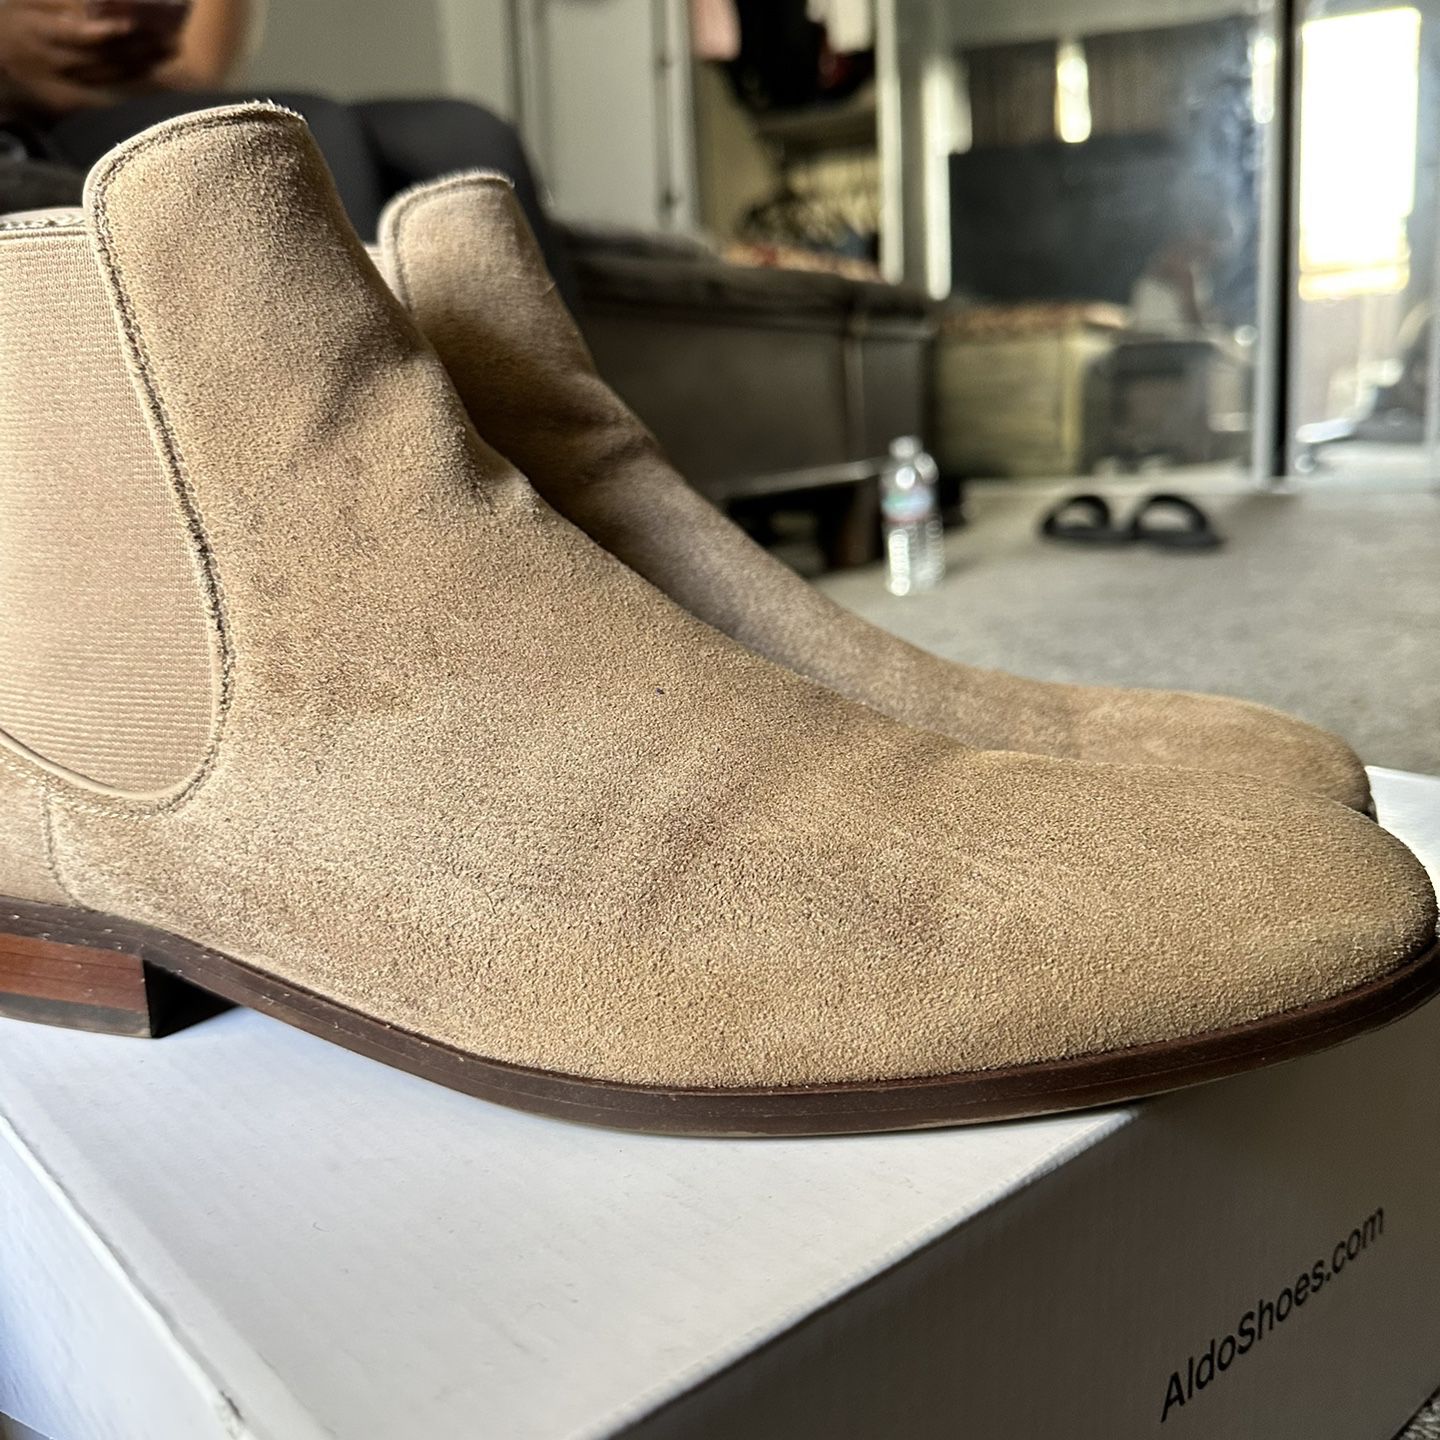 Aldo shoes/boots